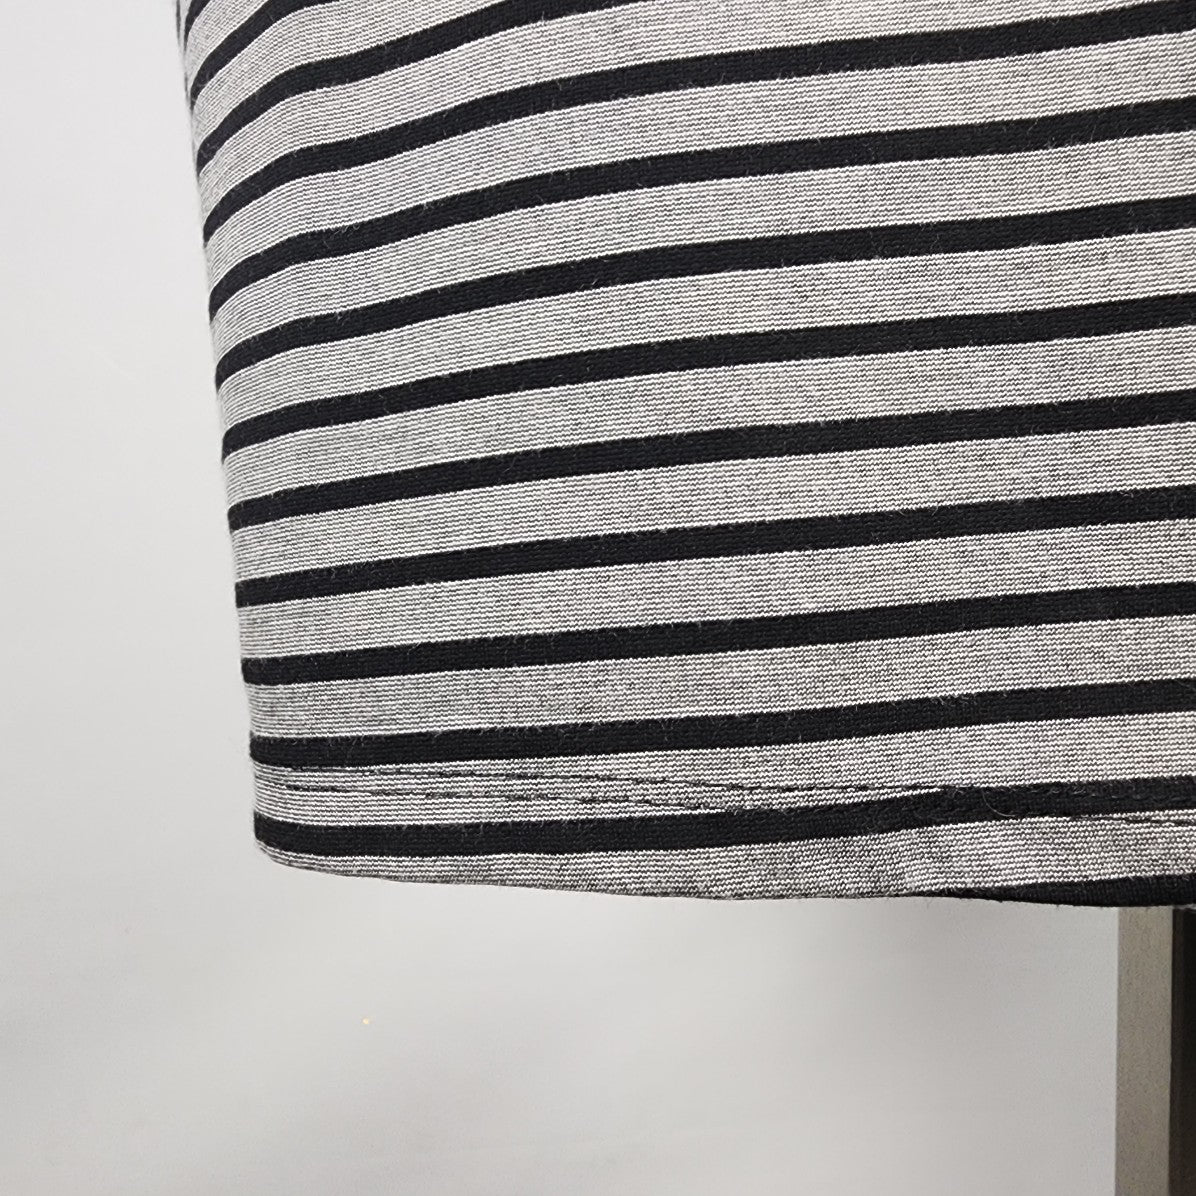 Pleione Grey Striped Sheath Sleeveless Dress Size XL